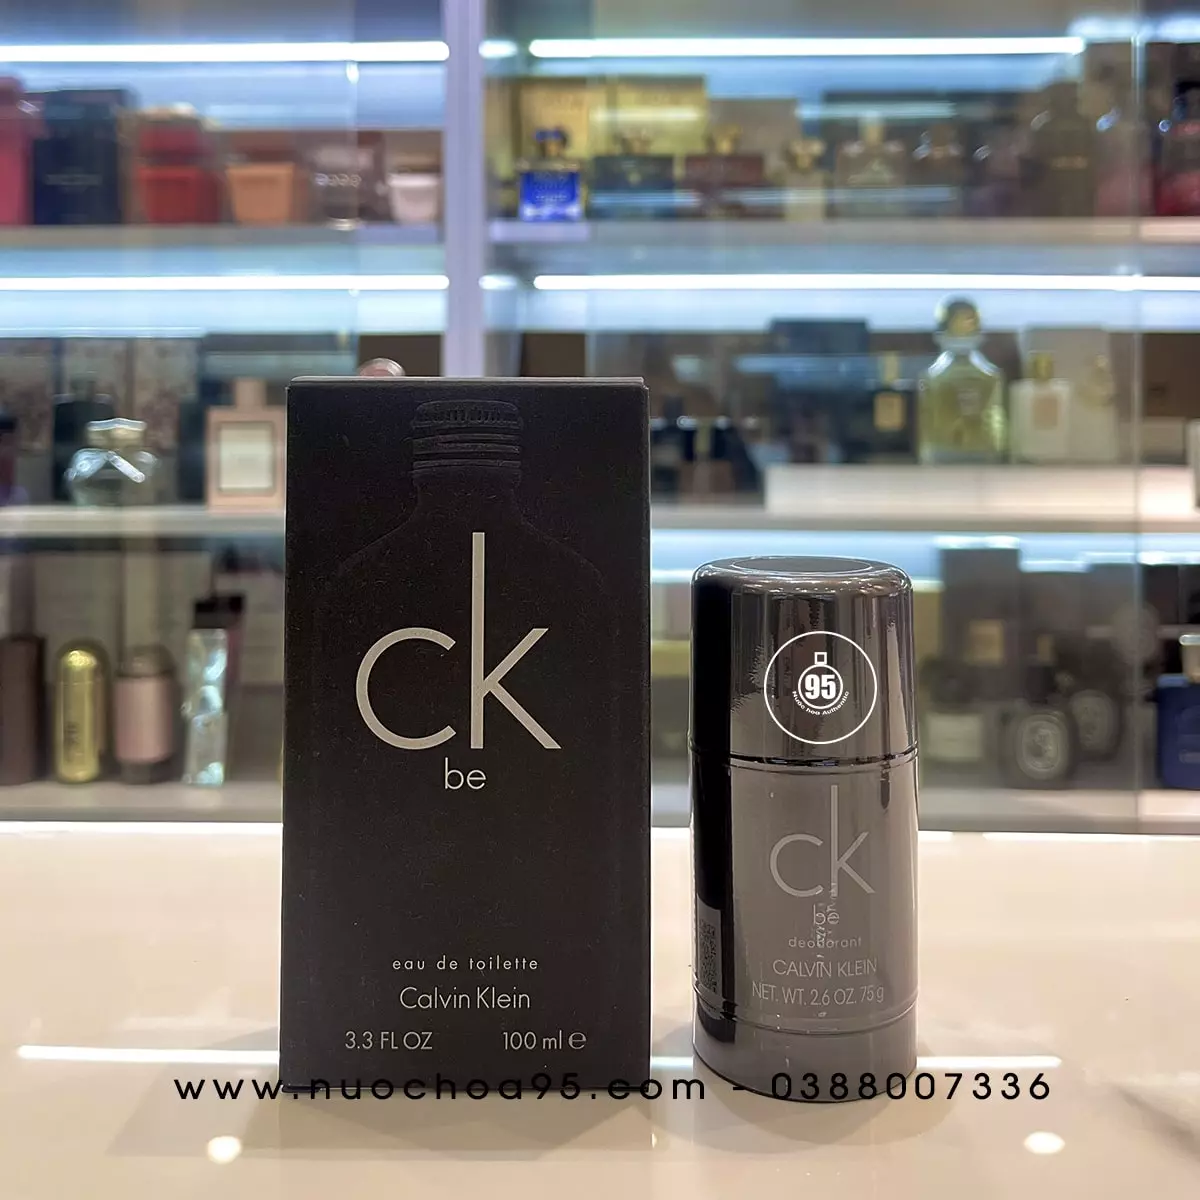 Lăn khử mùi Calvin Klein CK Be - Ảnh 2